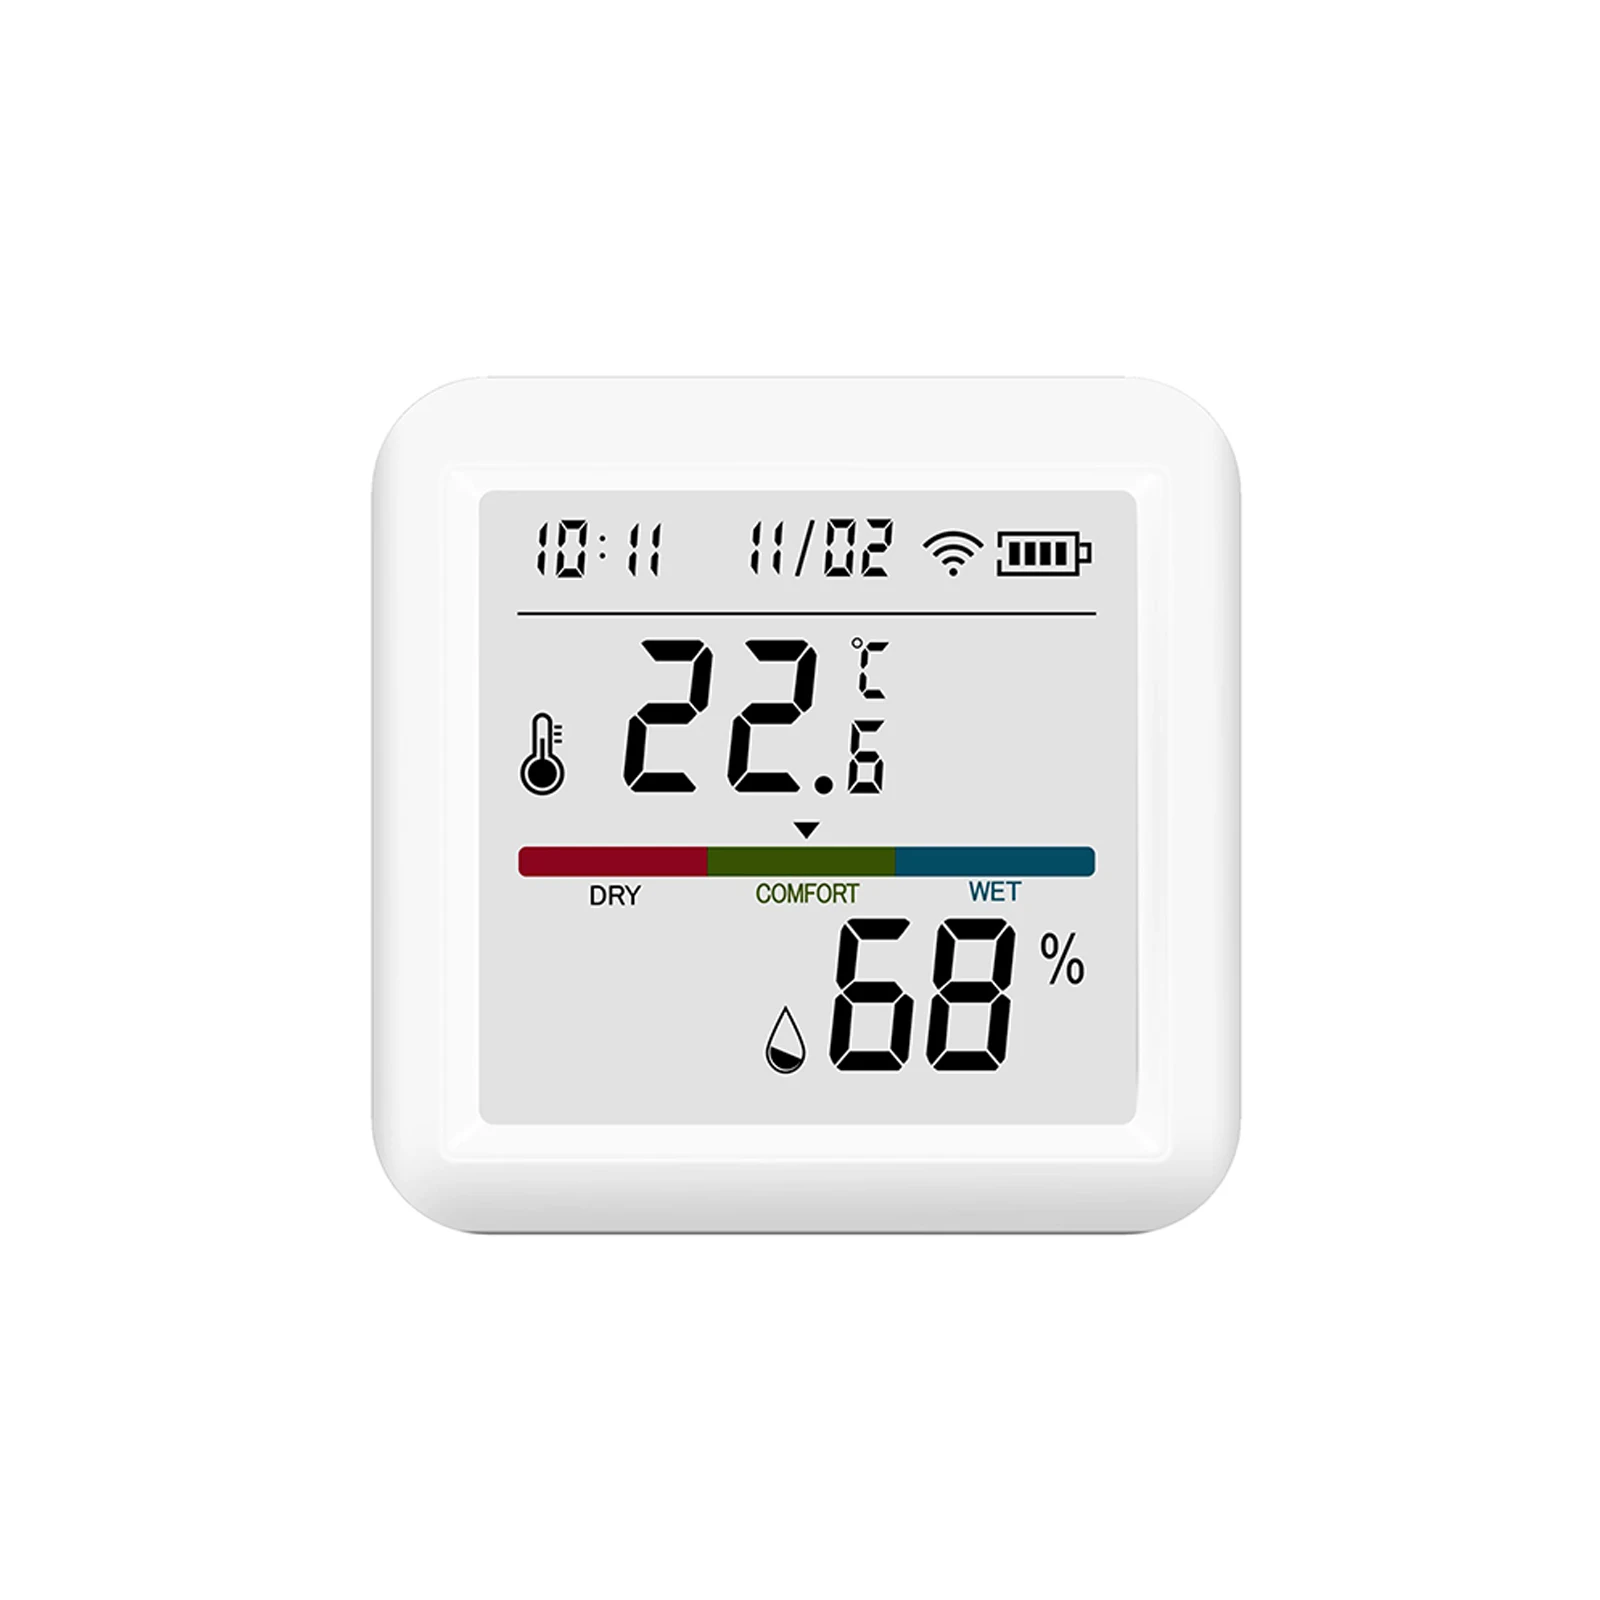  1 / 3 шт. Tuya Smart WIFI Датчик температуры и влажности Внутренний гигрометр Термометр с ЖК-дисплеем Поддержка Alexa 4